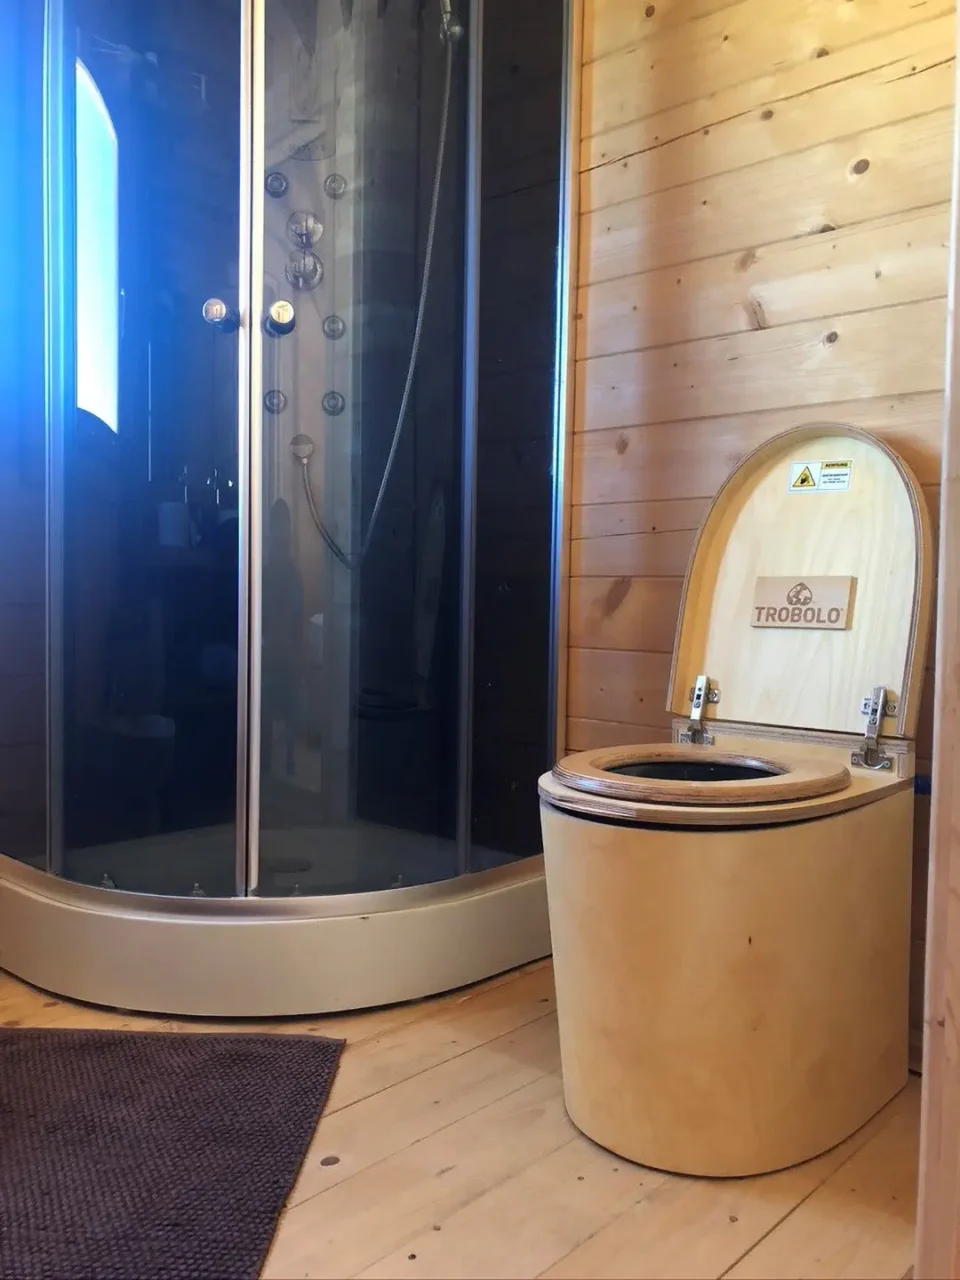 Une toilette sèche portable pour van aménagé ou camping-car Couleurs des  façades Médium brut Finition des façades Brut